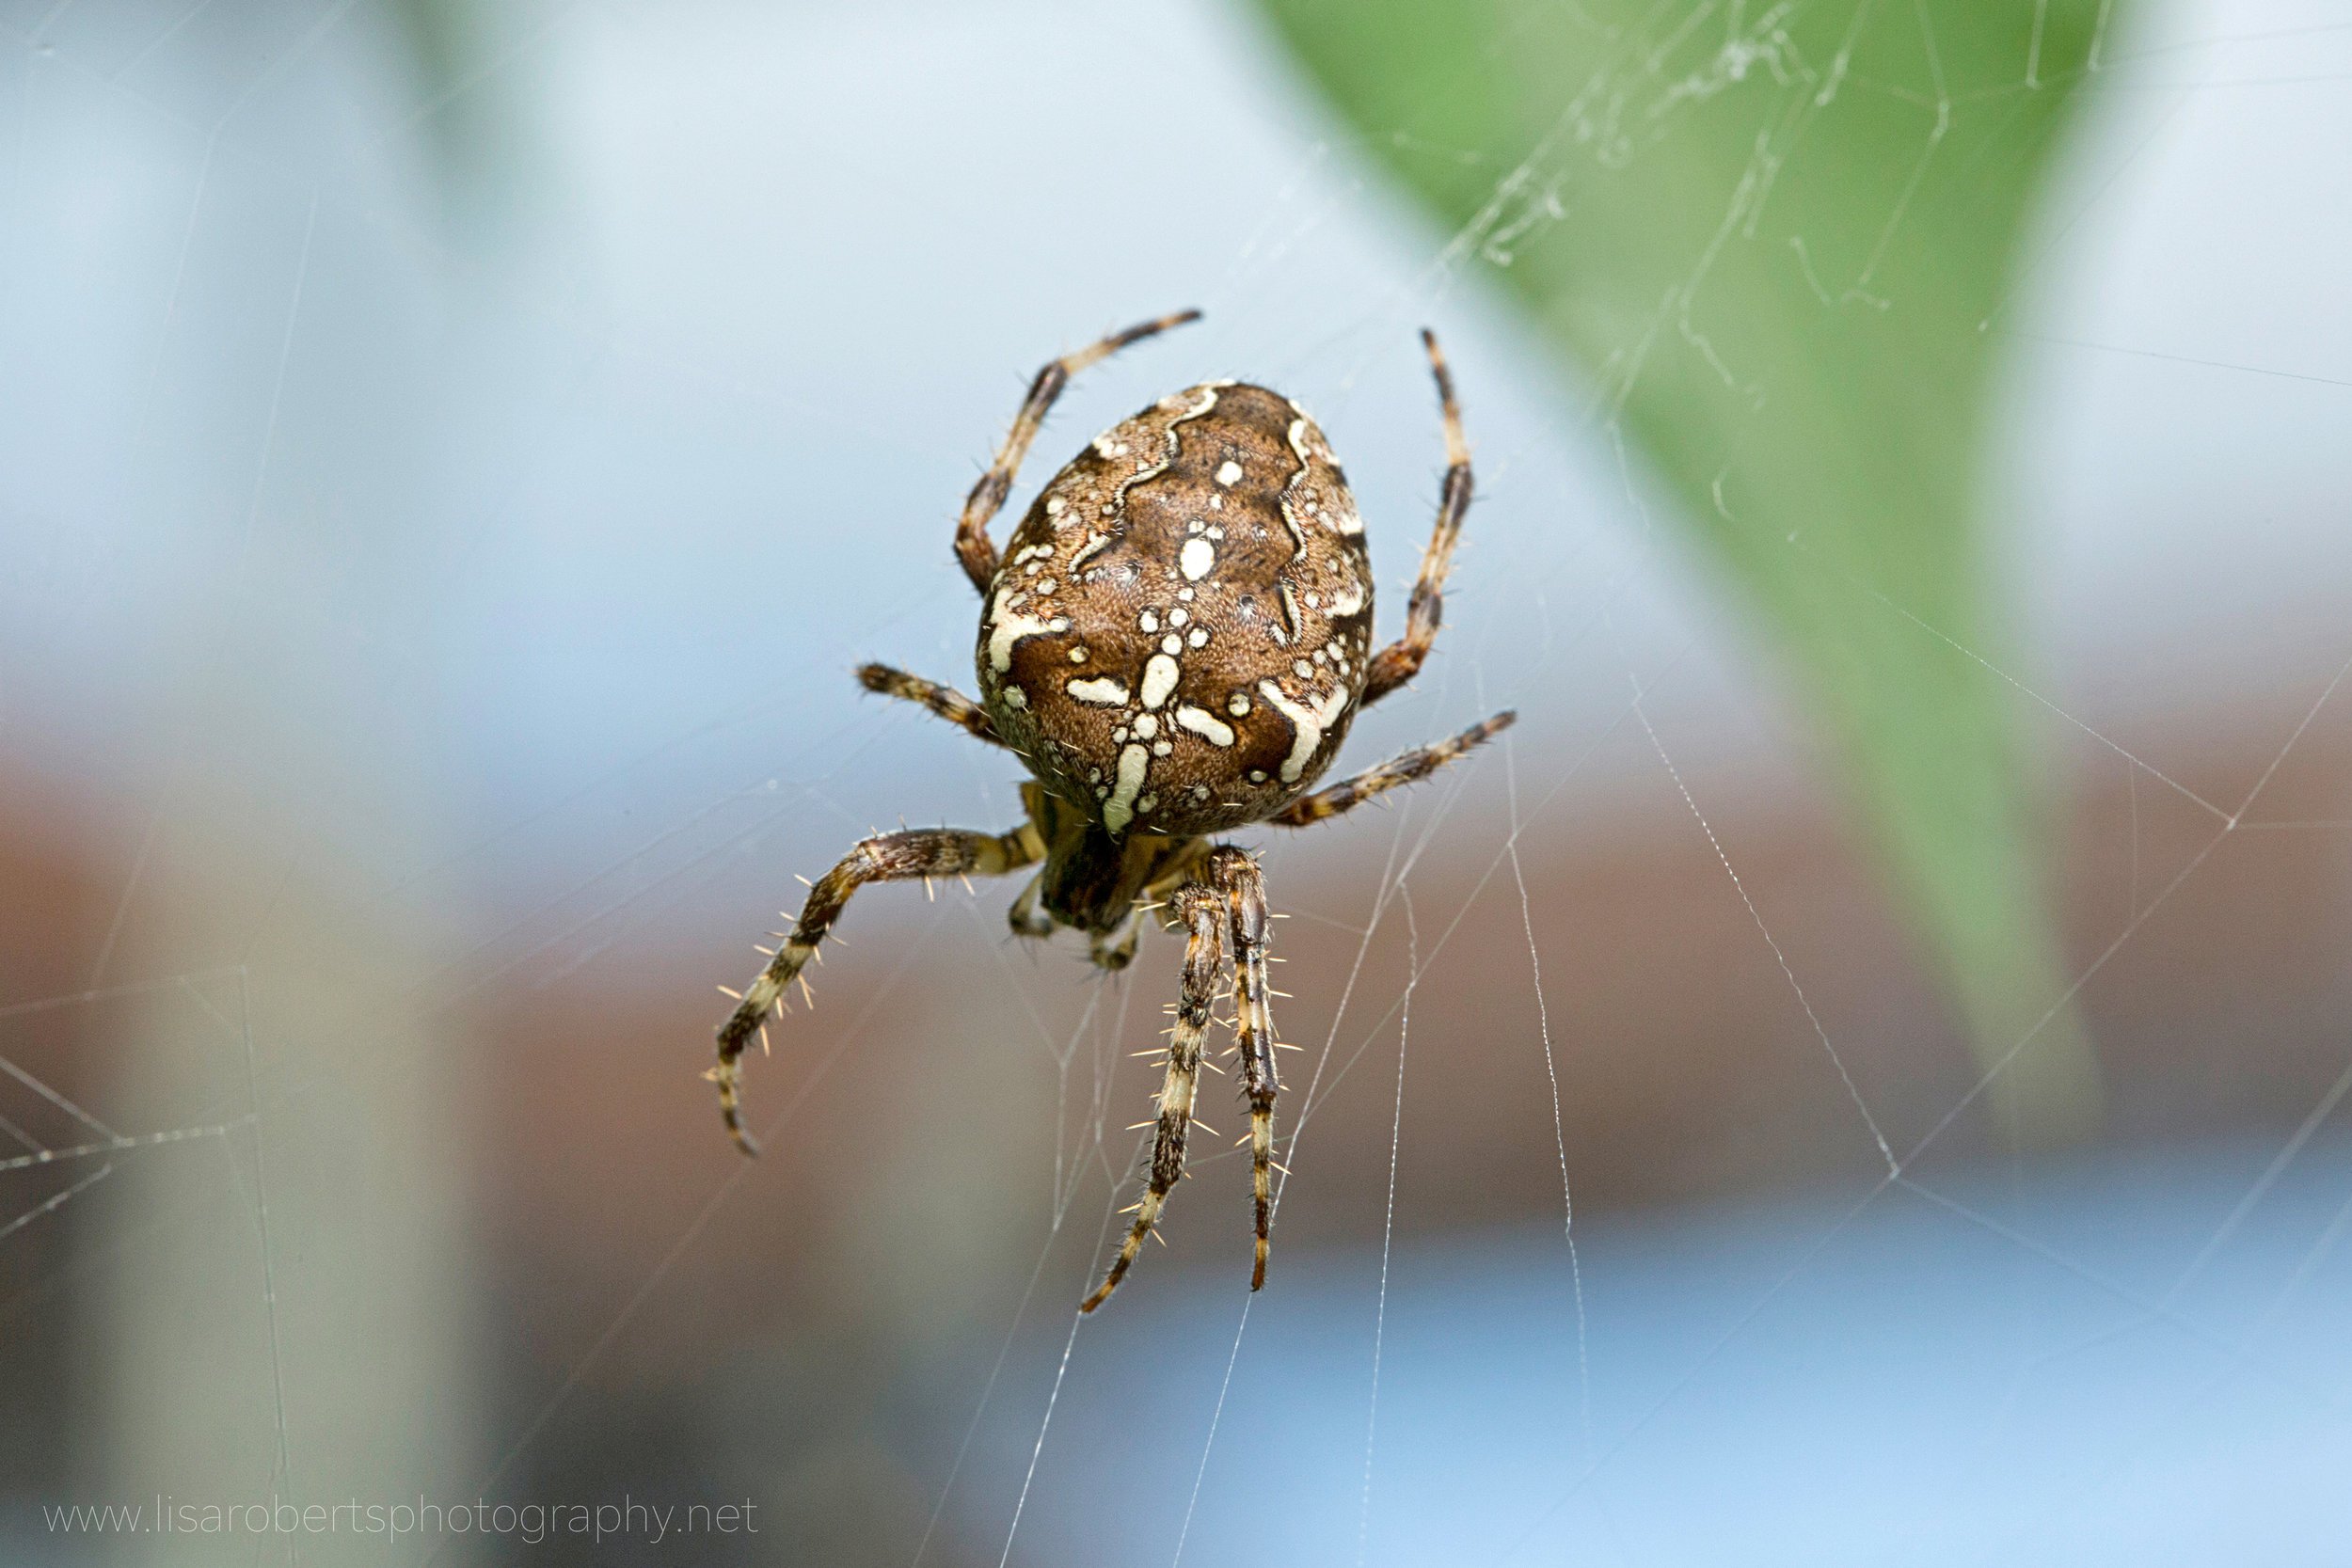  European Garden Spider 